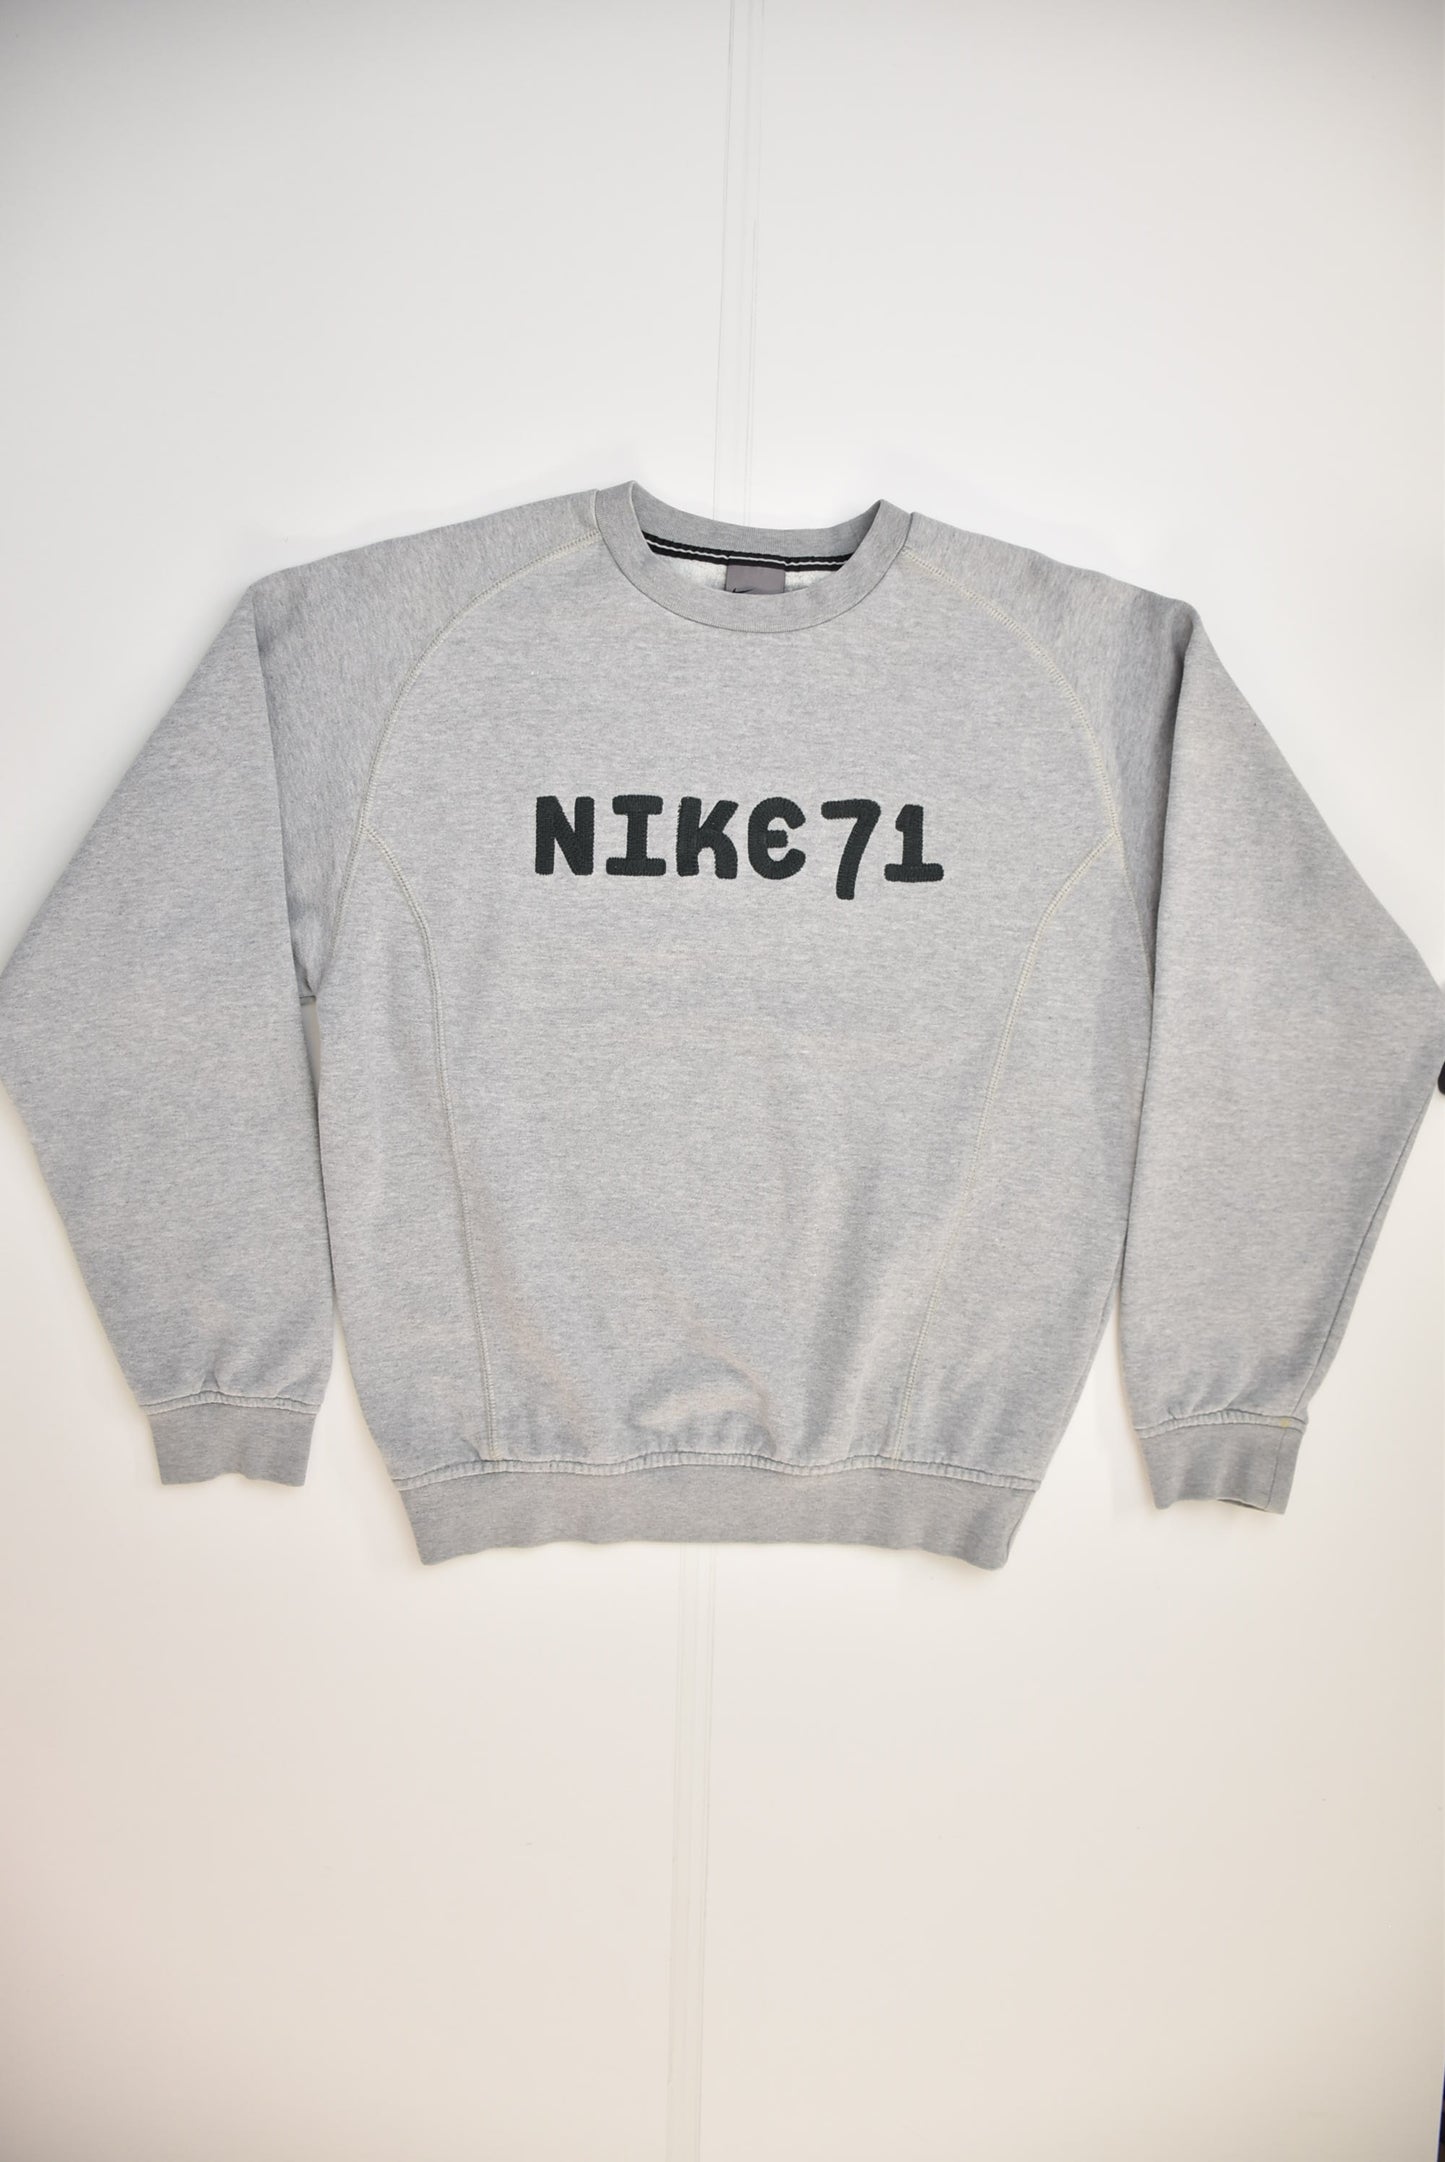 00s Nike 71 Sweatshirt (XS)